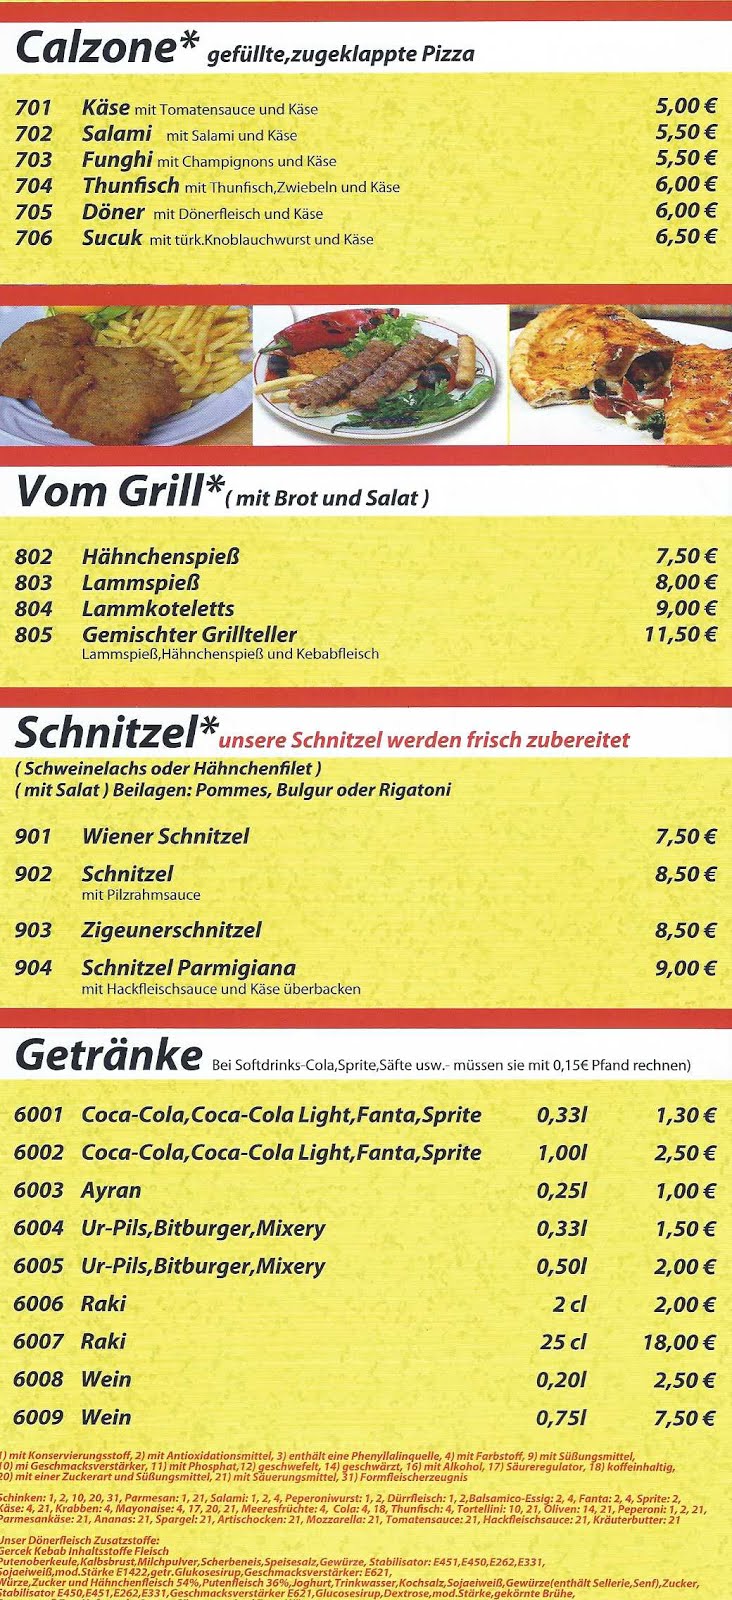 Calzone - Vom Grill - Schnitzel - Getränke